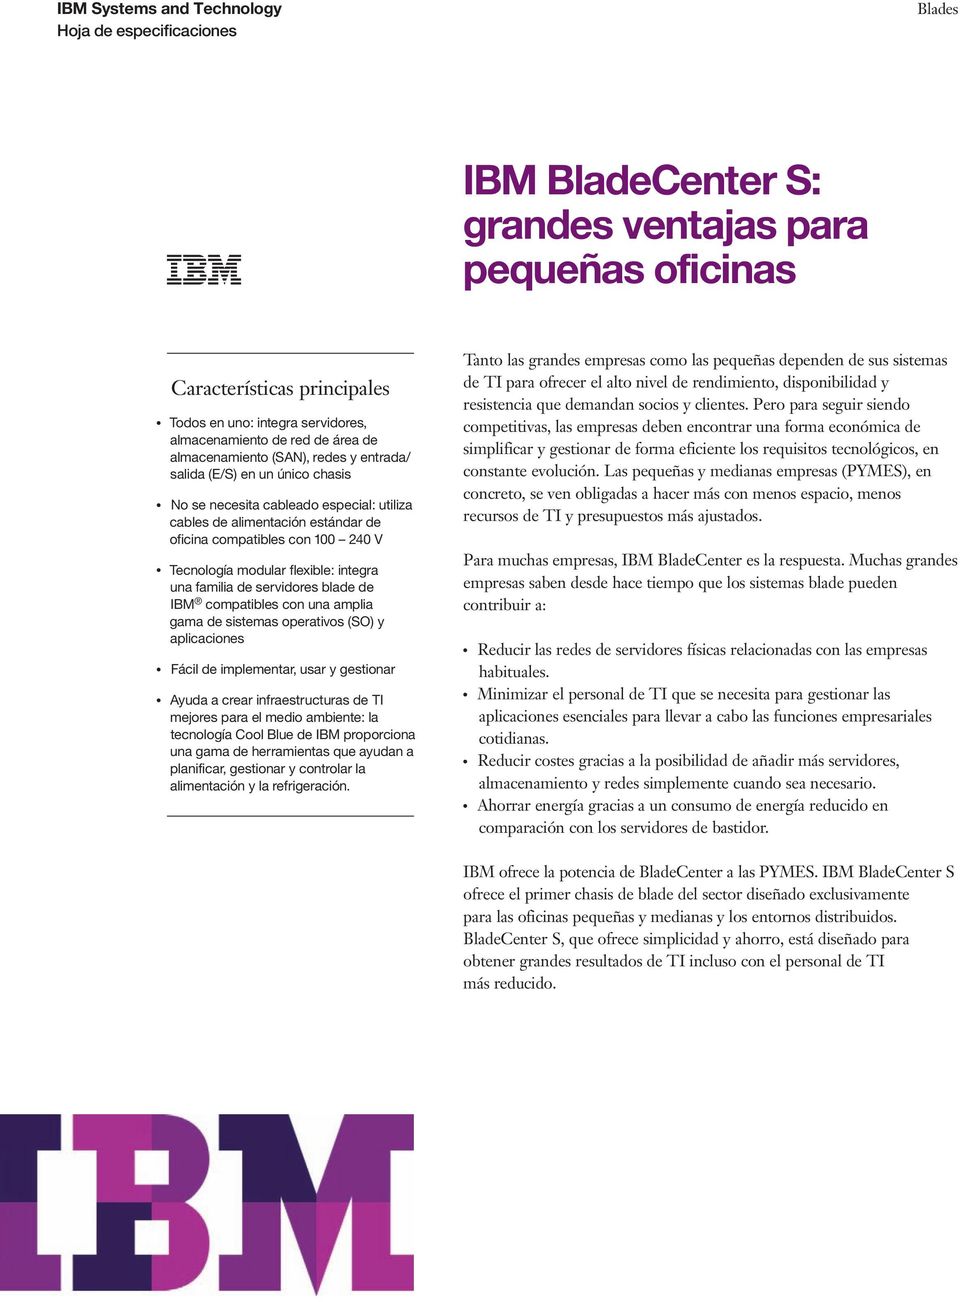 blade de IBM compatibles con una amplia gama de sistemas operativos (SO) y aplicaciones Fácil de implementar, usar y gestionar Ayuda a crear infraestructuras de TI mejores para el medio ambiente: la